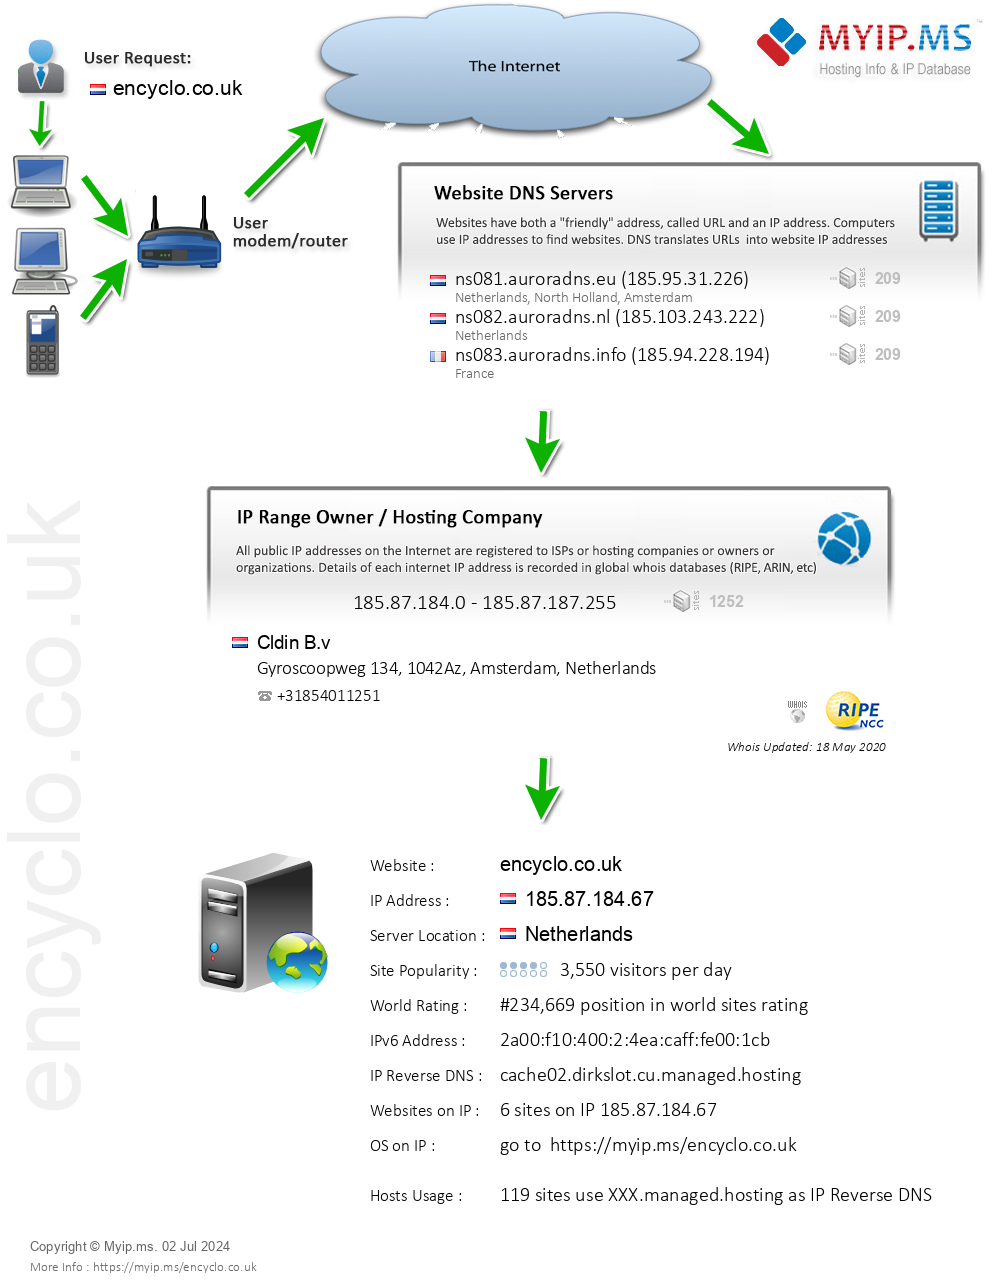 Encyclo.co.uk - Website Hosting Visual IP Diagram